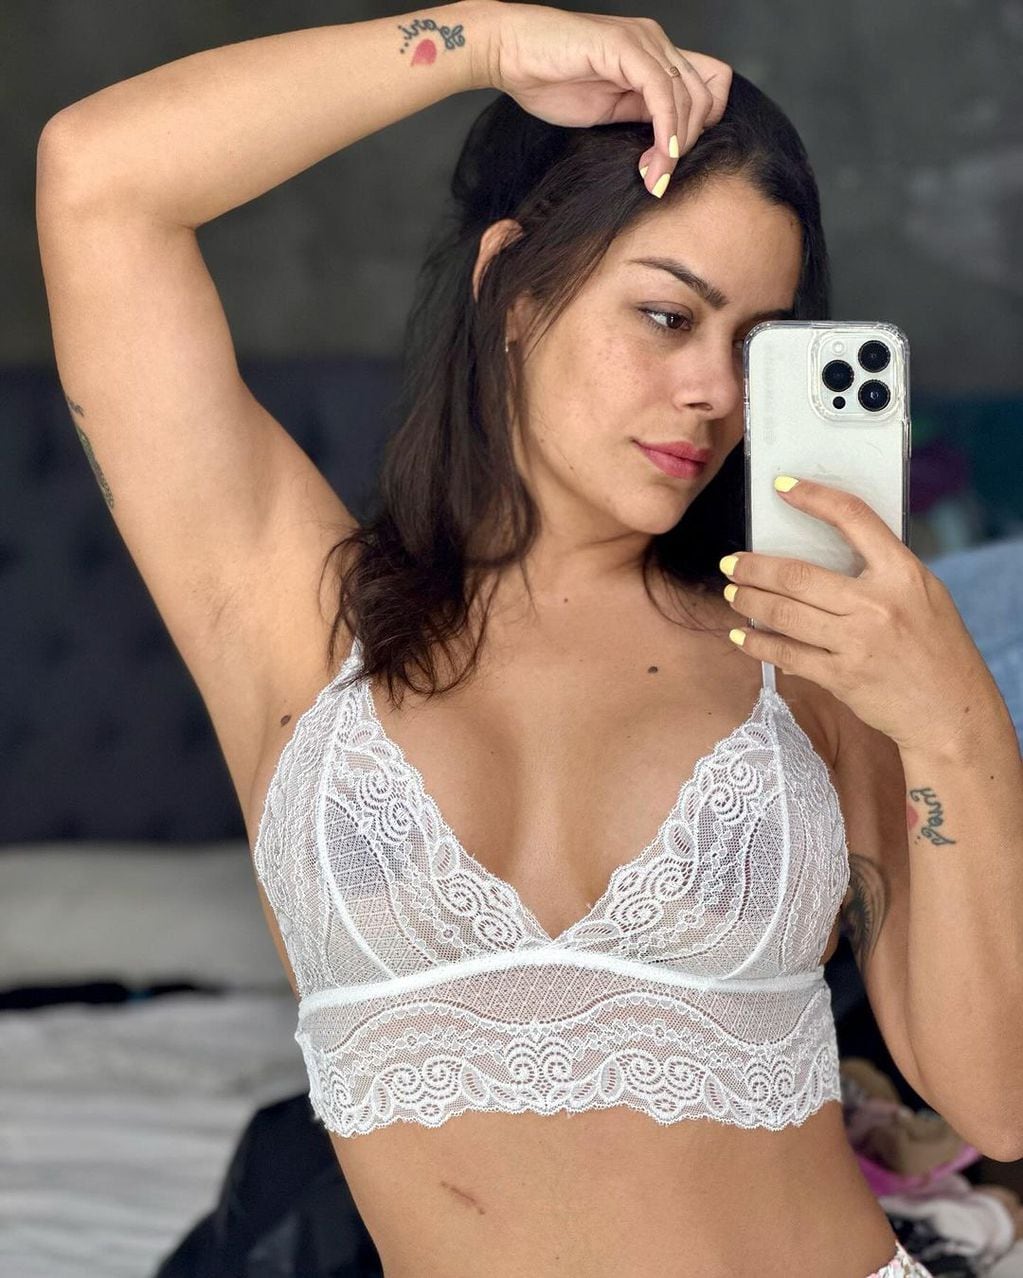 Antes de ir a dormir, Larissa Riquelme pasó por Instagram y compartió unas fotos en ropa interior.